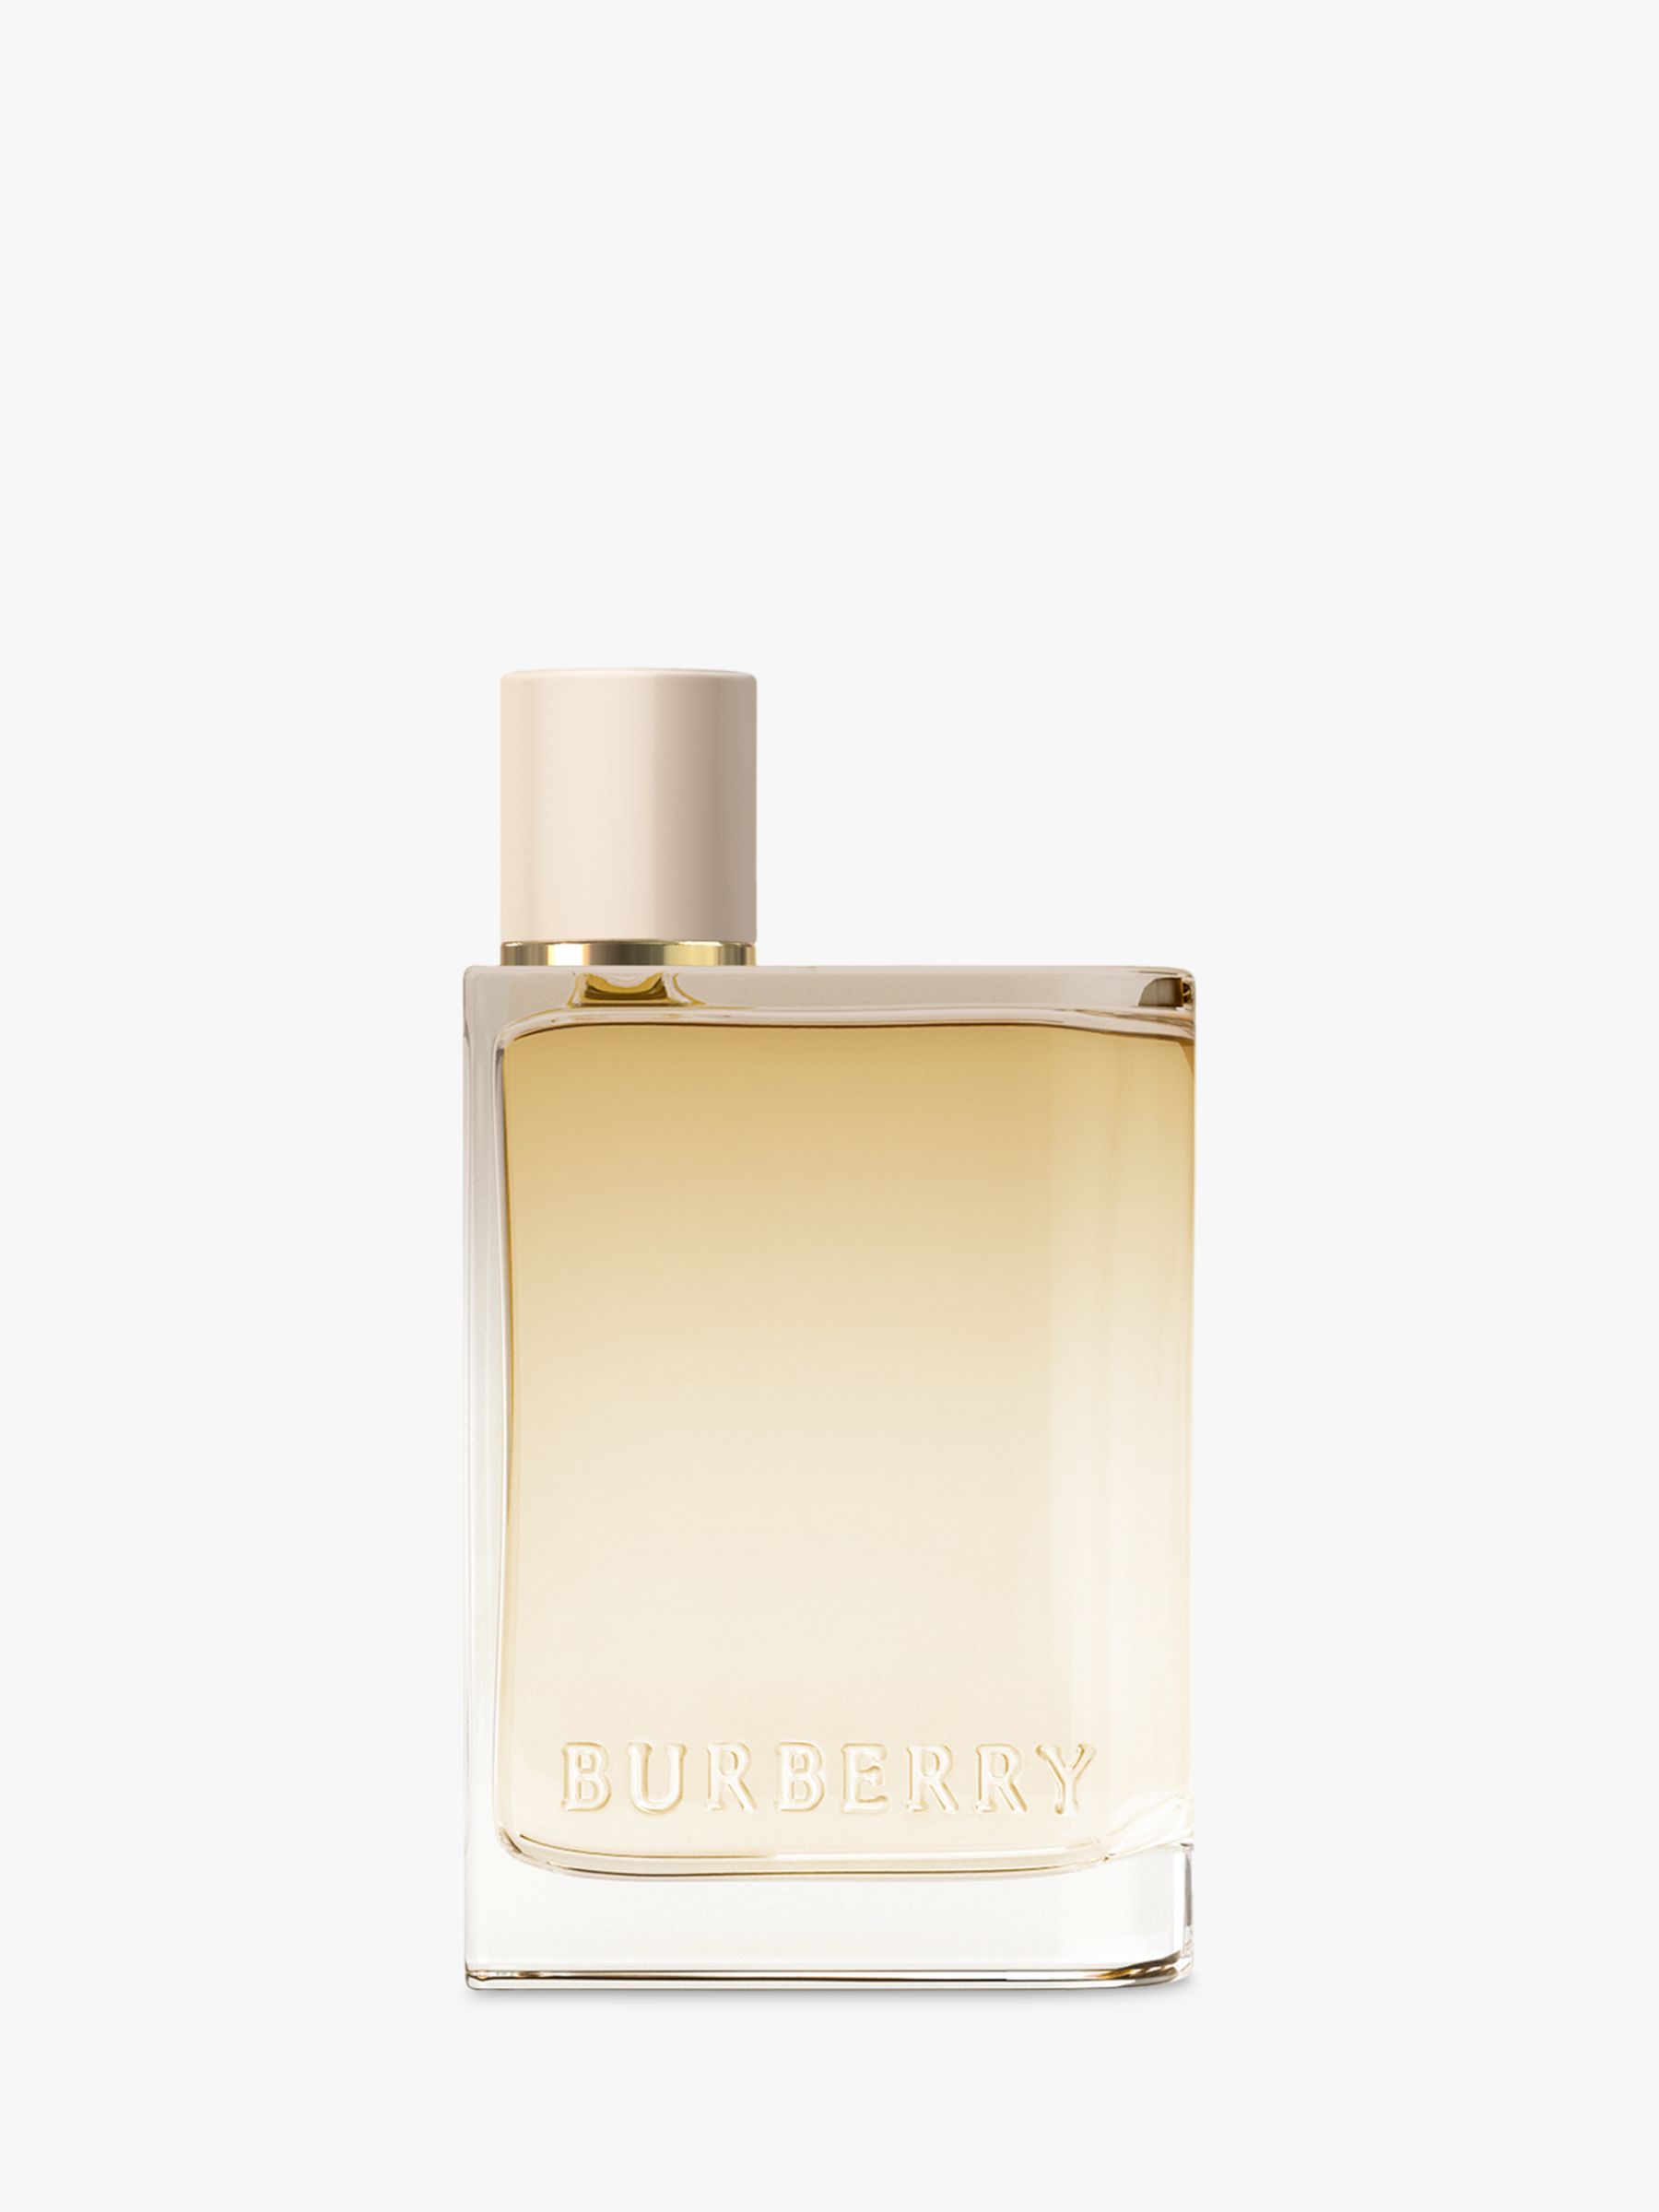 Burberry Her London Dream Eau de Parfum, 50ml at John Lewis & Partners